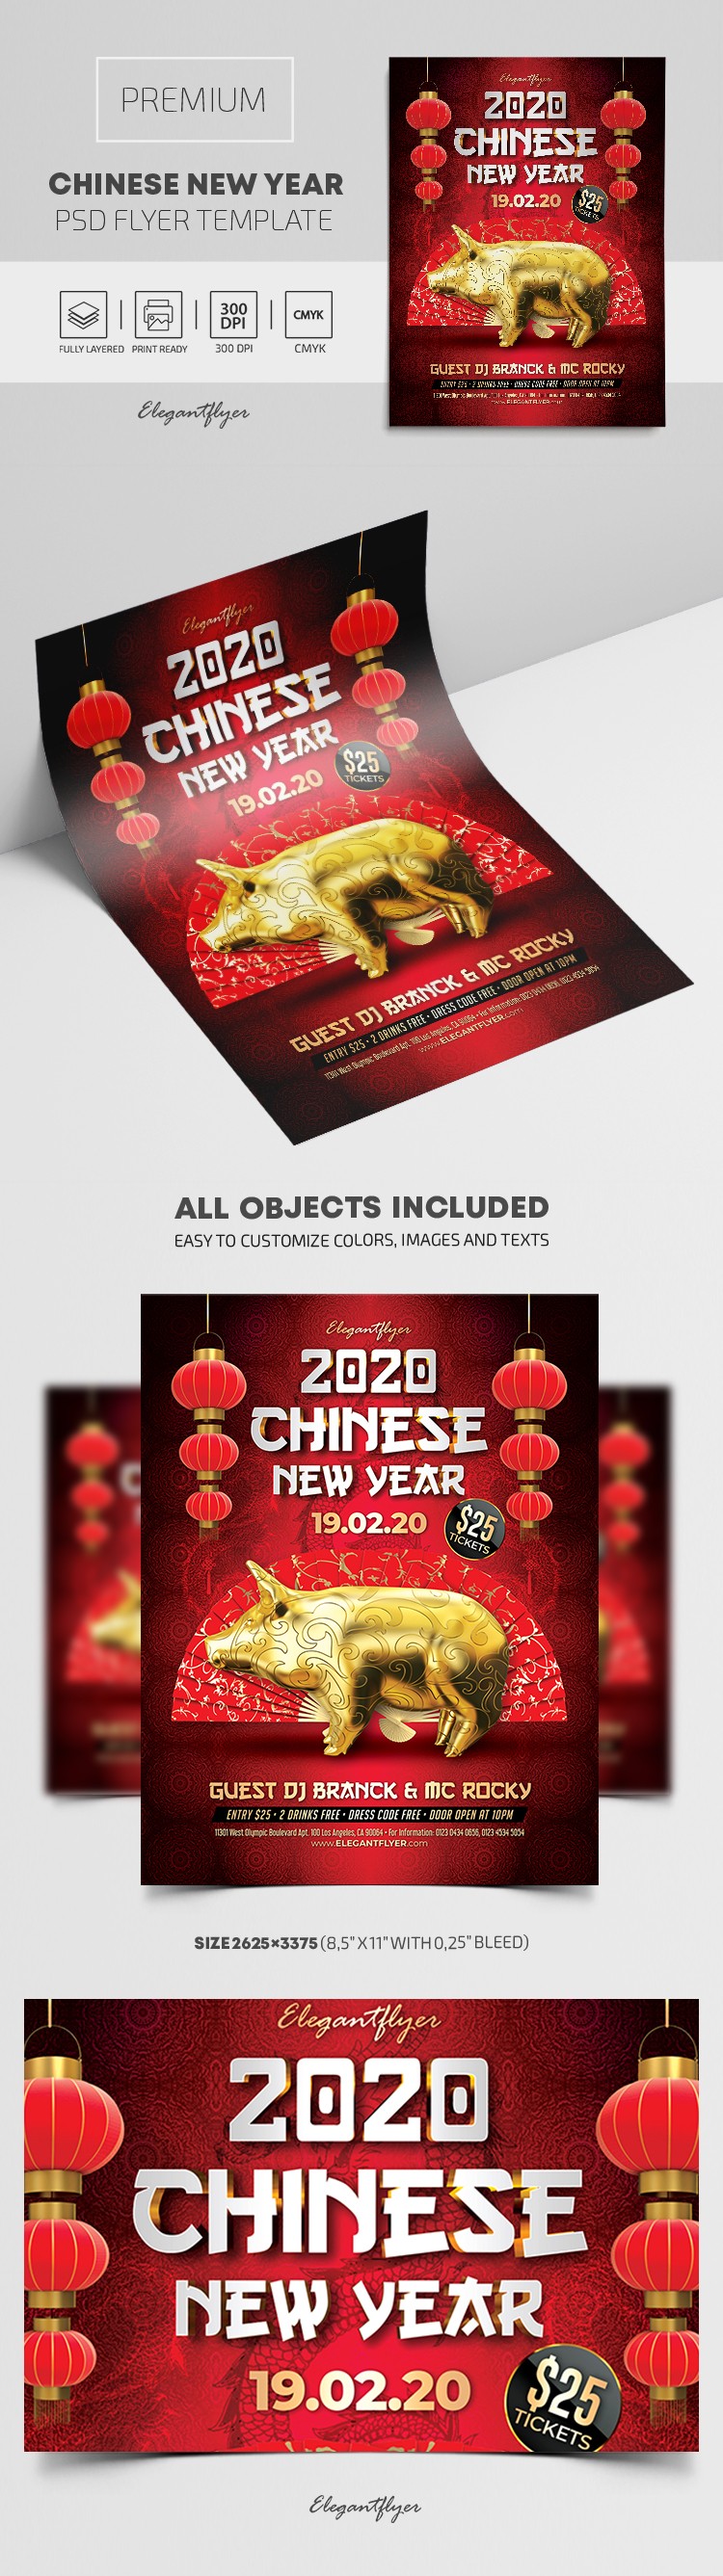 Chinesisches Neujahr by ElegantFlyer